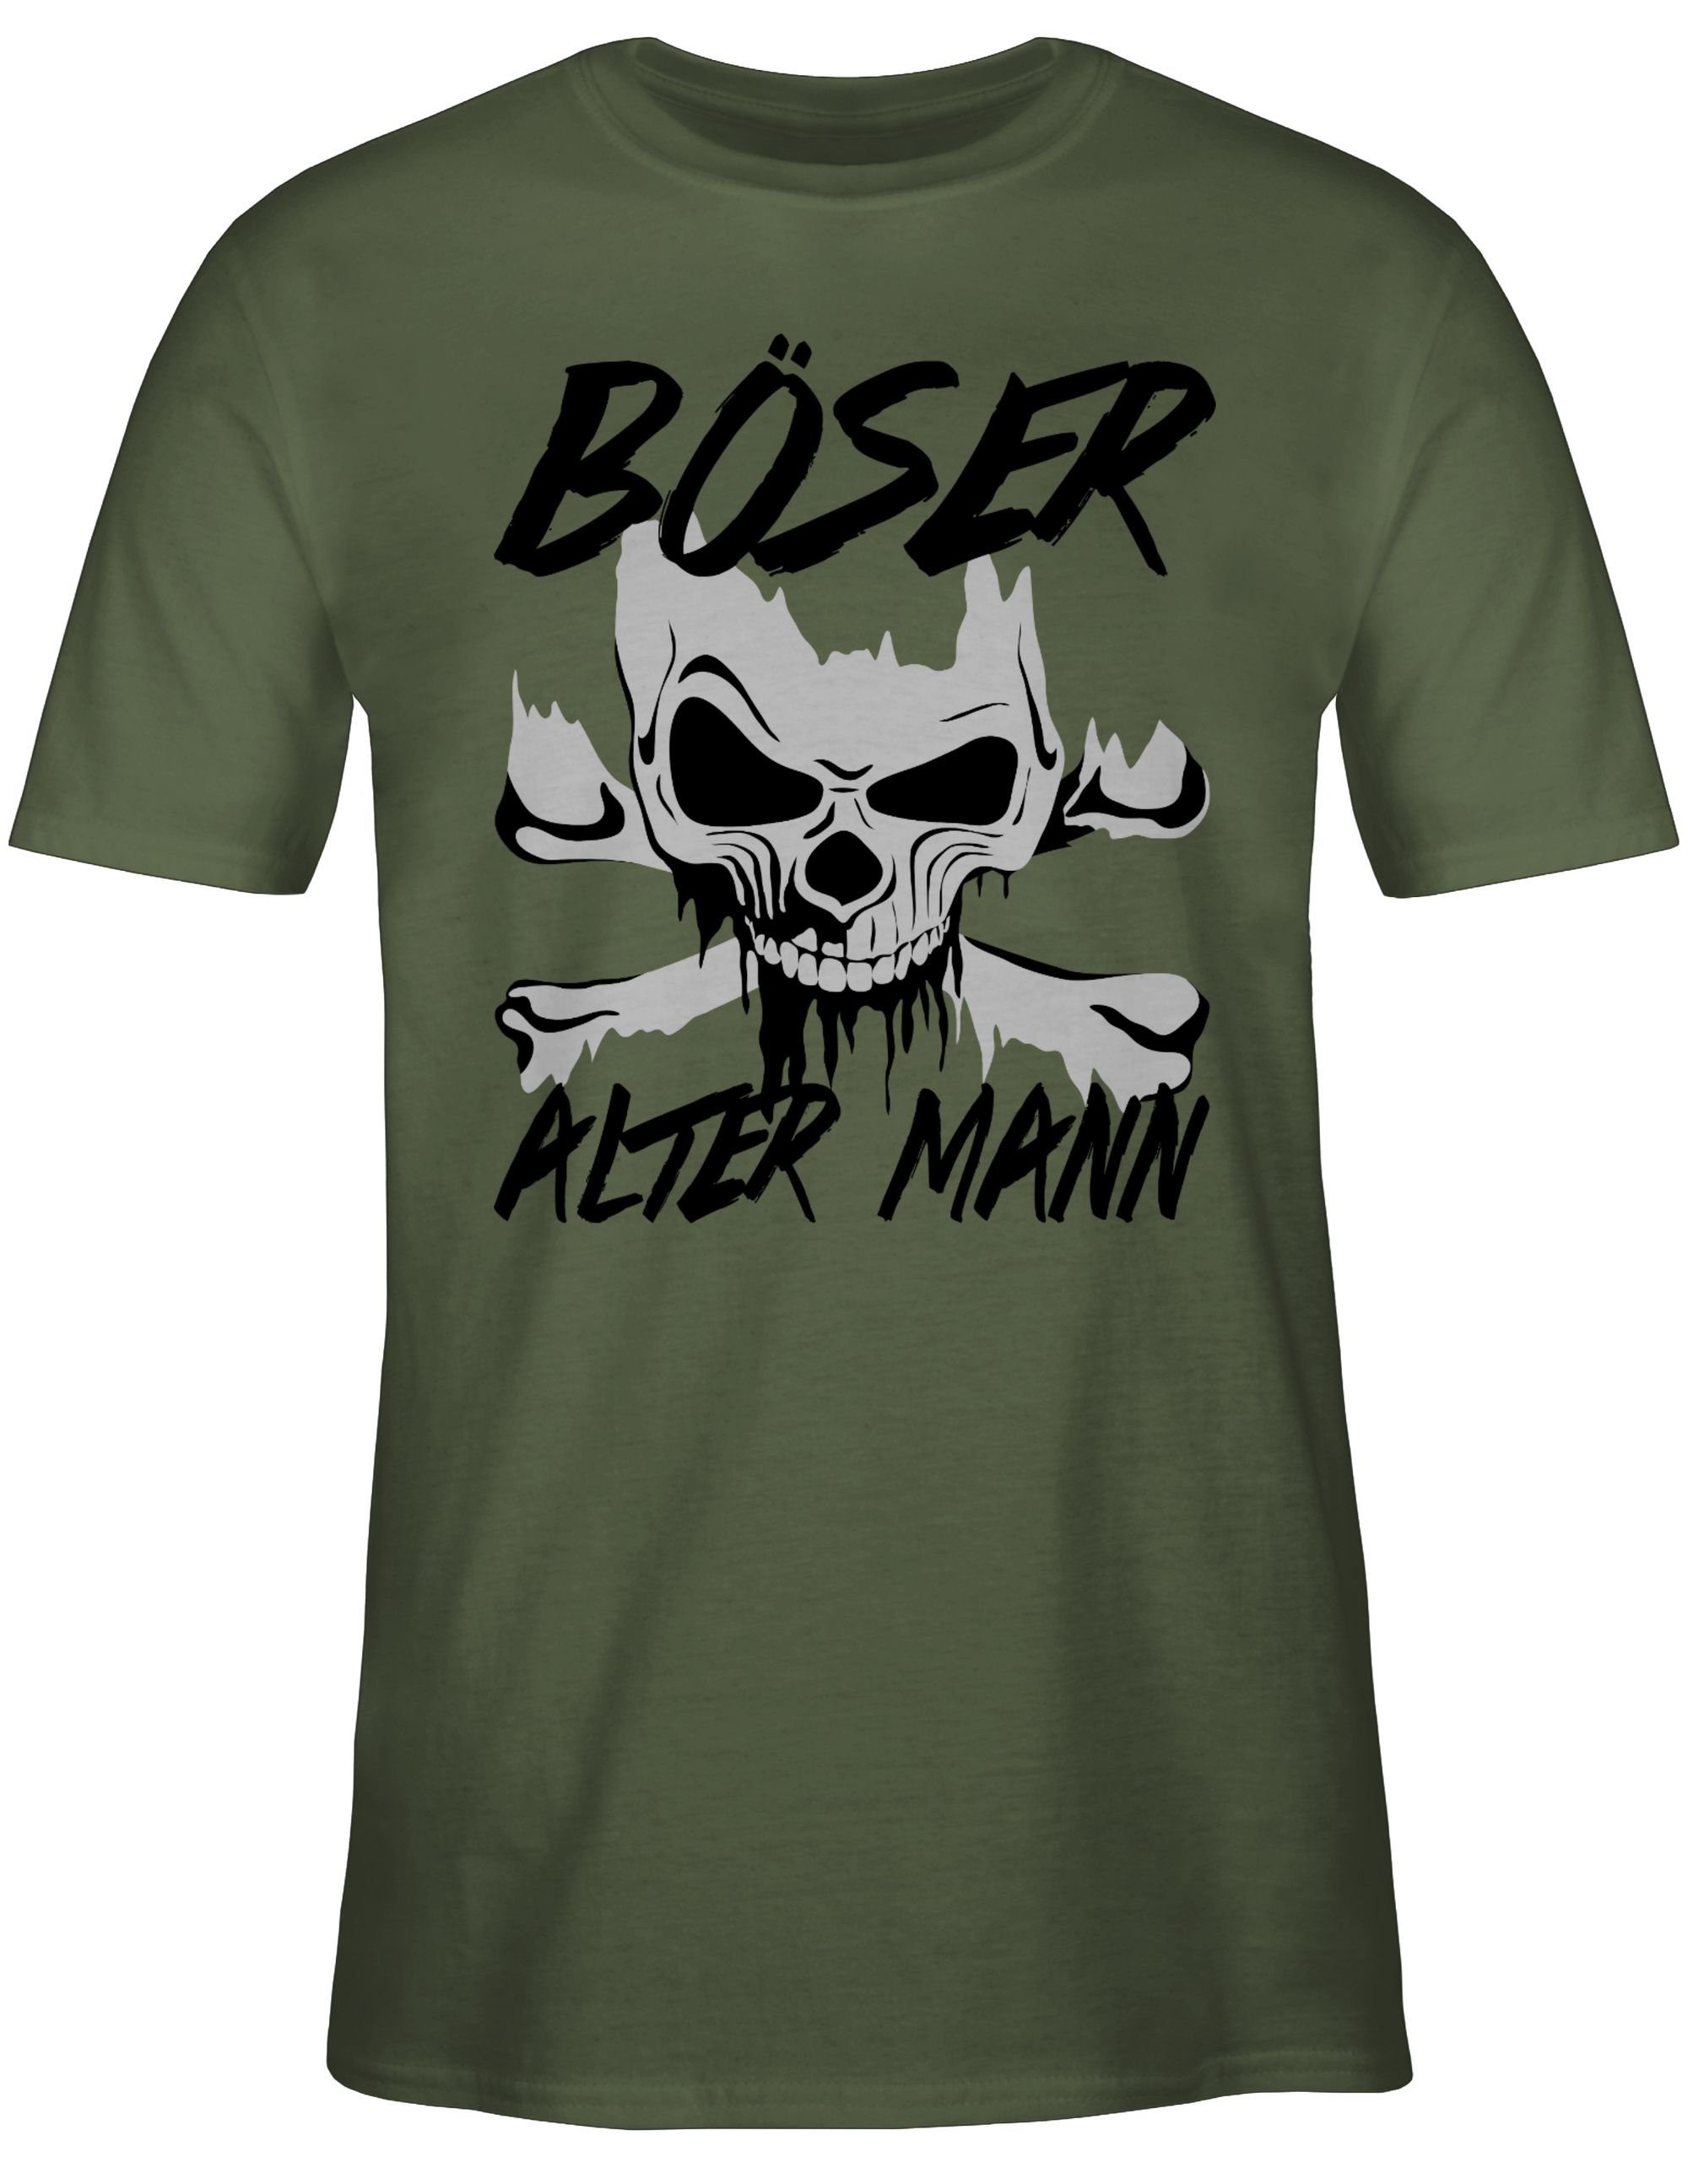 Shirtracer T-Shirt Piraten & Böser 2 - grau Totenkopf Army Mann alter Grün